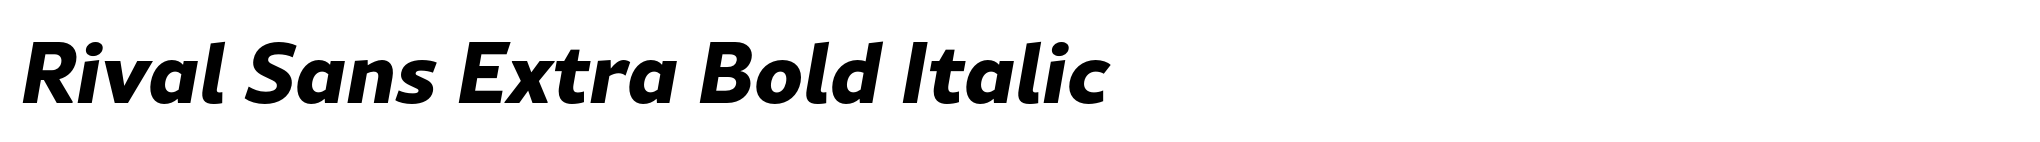 Rival Sans Extra Bold Italic image